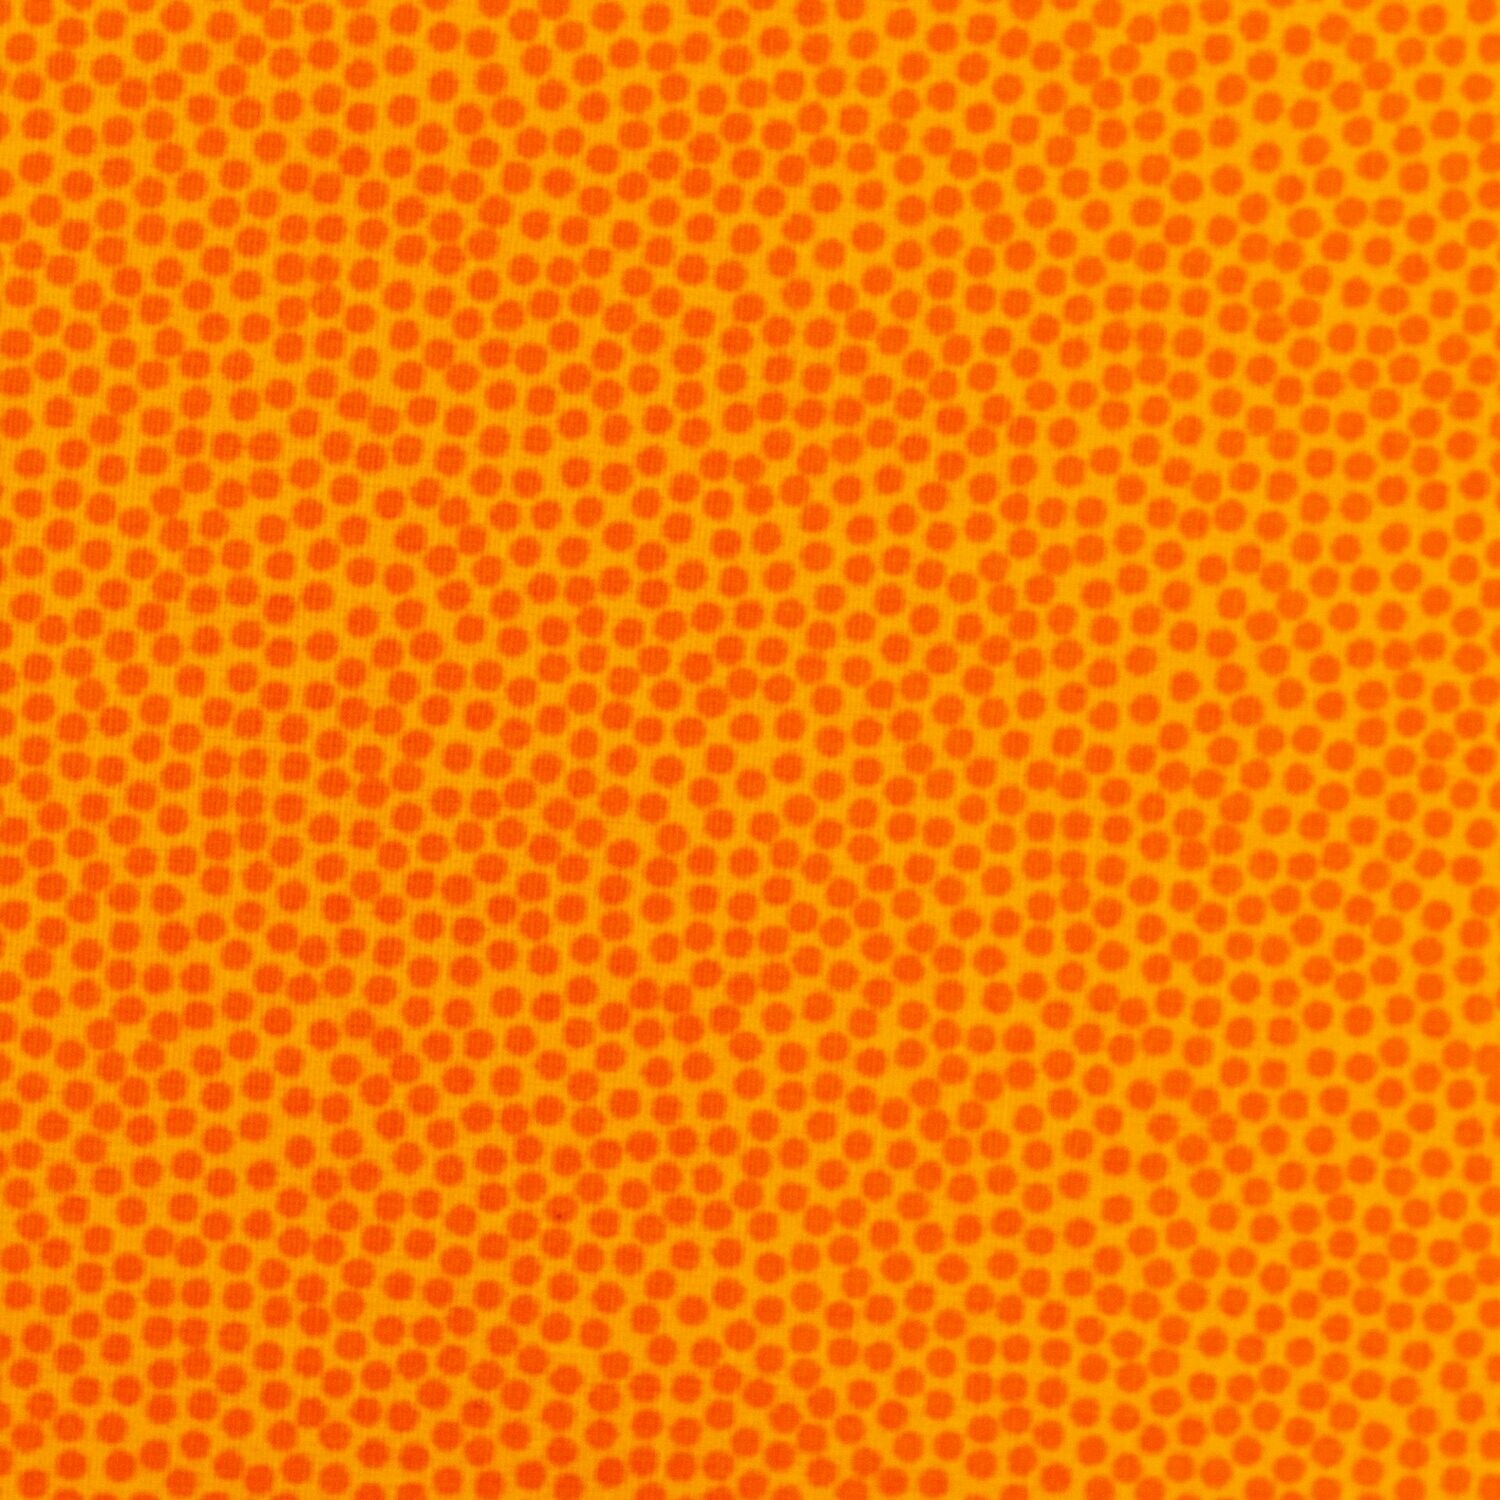 Baumwollstoff Dotty orange